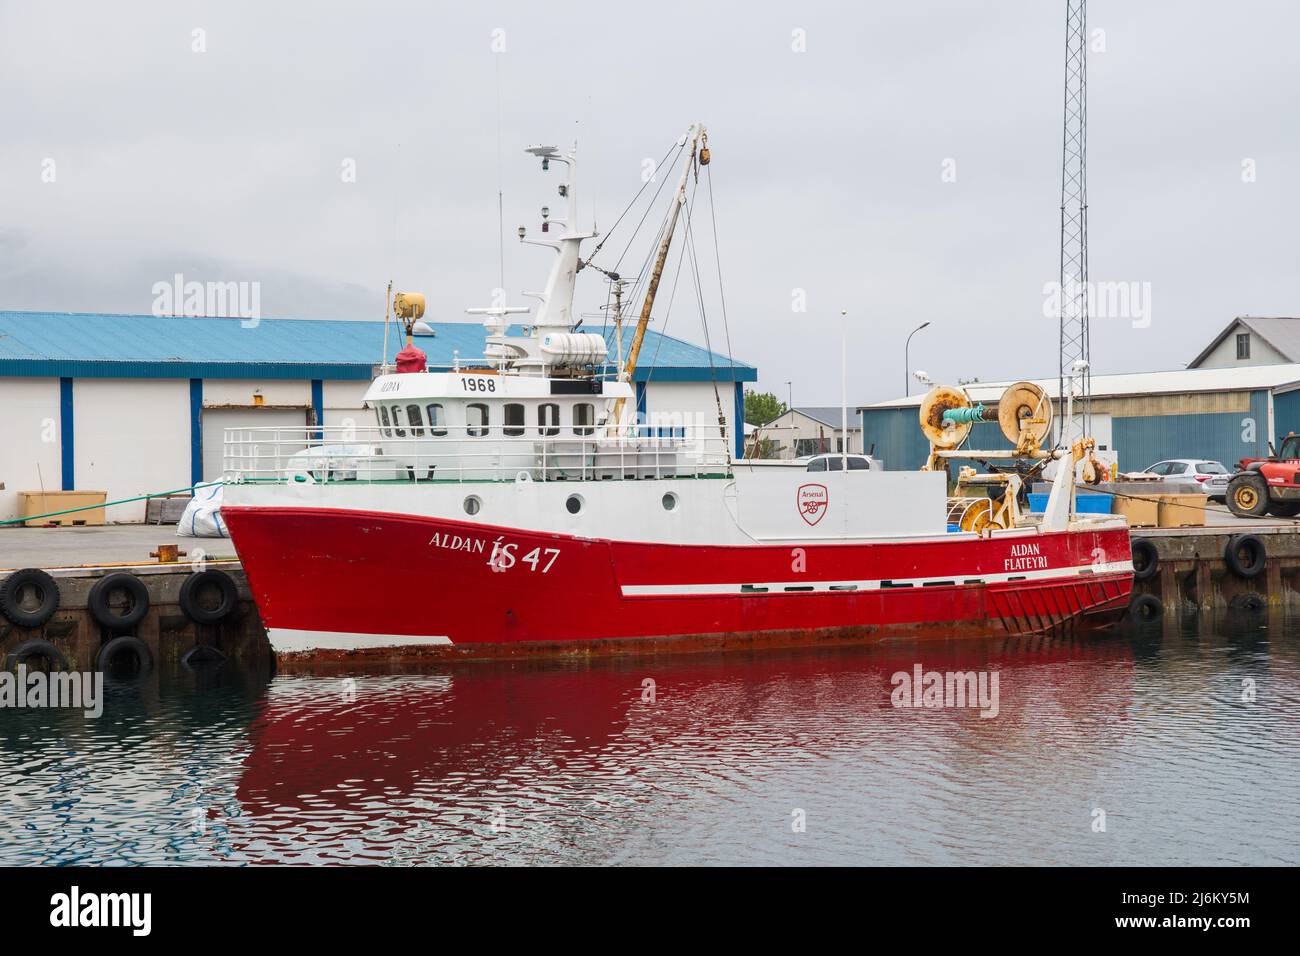 Flateyri Islanda - Luglio 6. 2021: Peschereccio nel porto di Flateyri, nell'Islanda occidentale Foto Stock